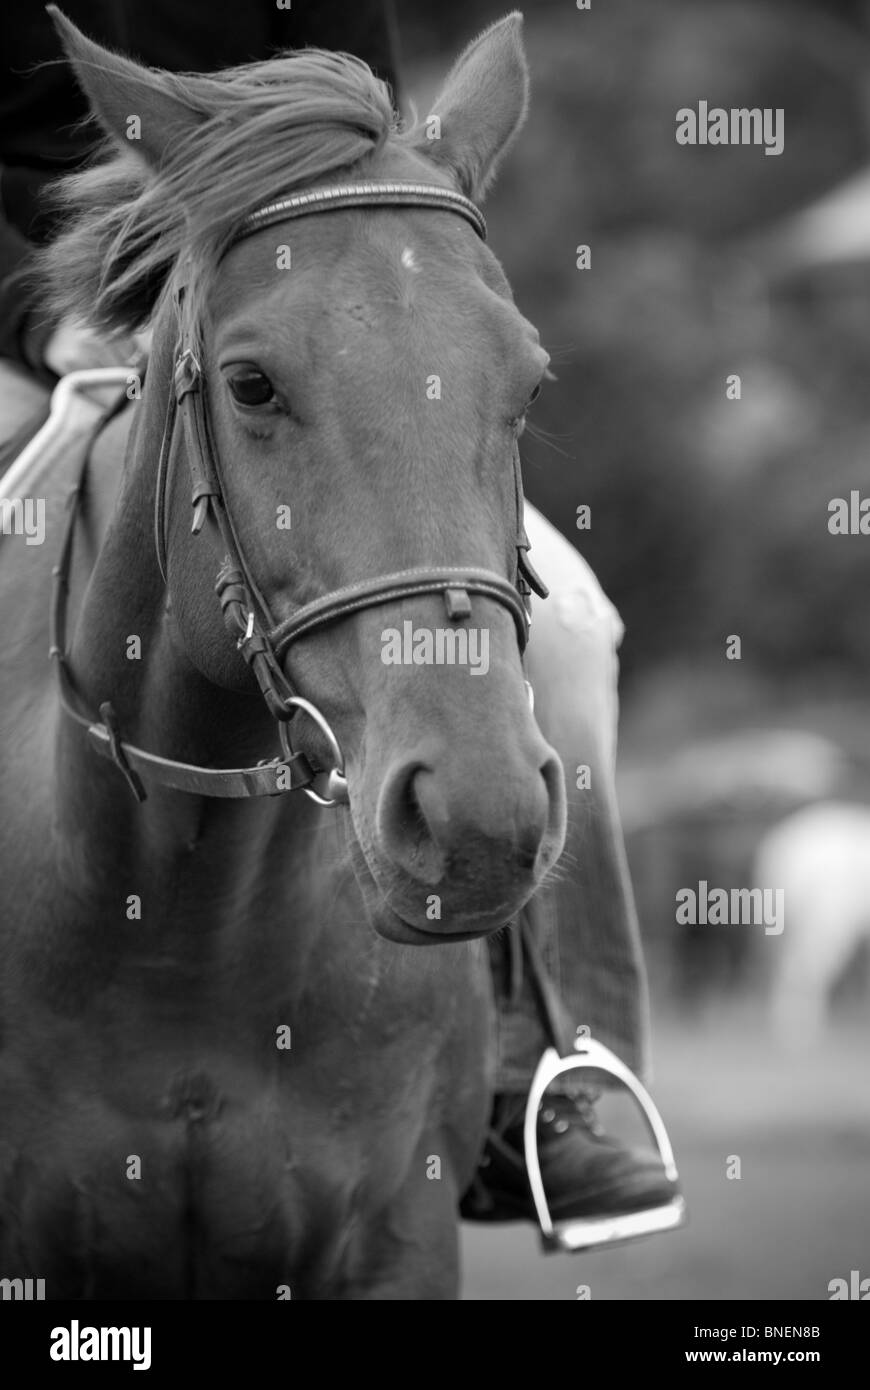 Horse Equus ferus caballus Stock Photo